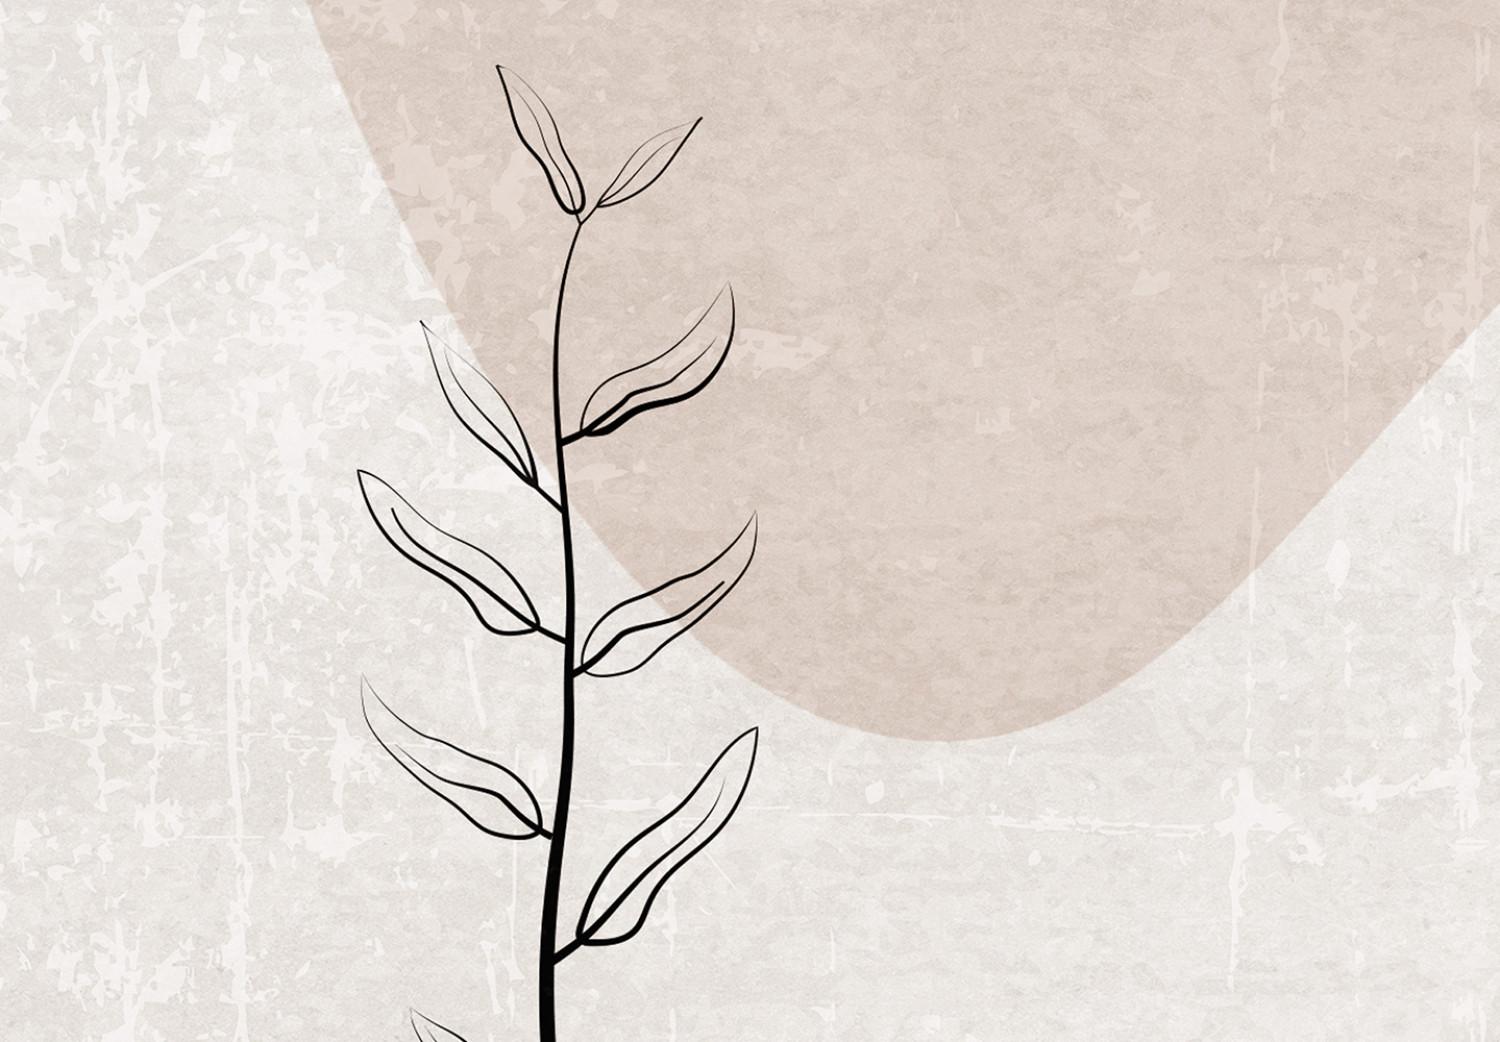 Poster Toque delicado: abstracción minimalista con la mano en beige